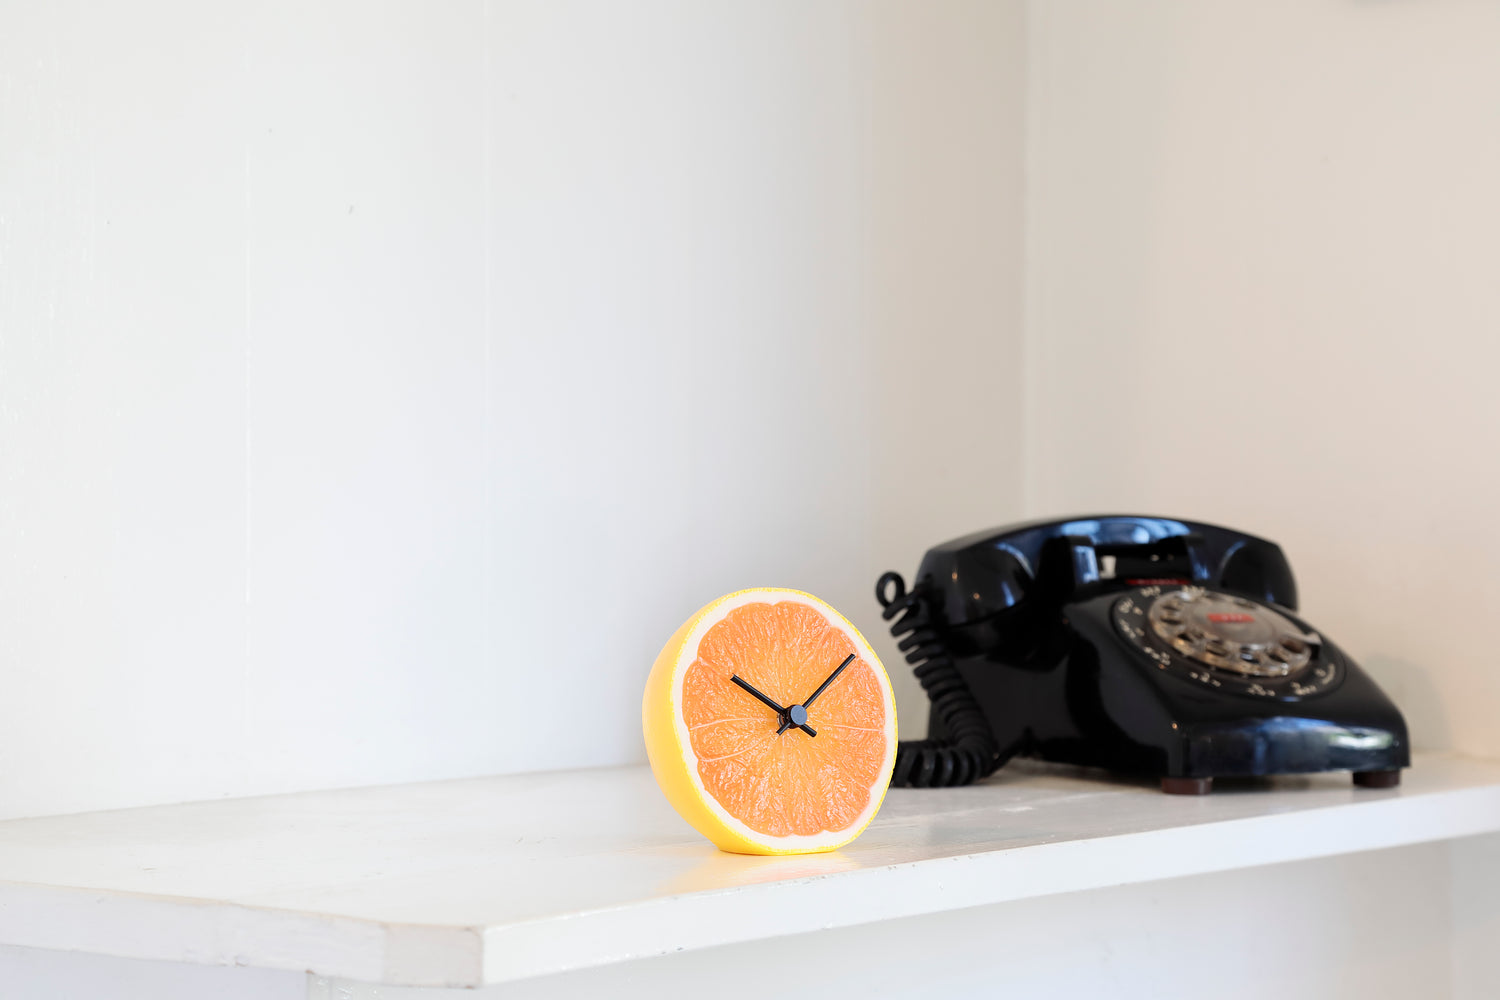 元祖食品サンプル屋「Replica Food Clock グレープフルーツ」のイメージ画像です。